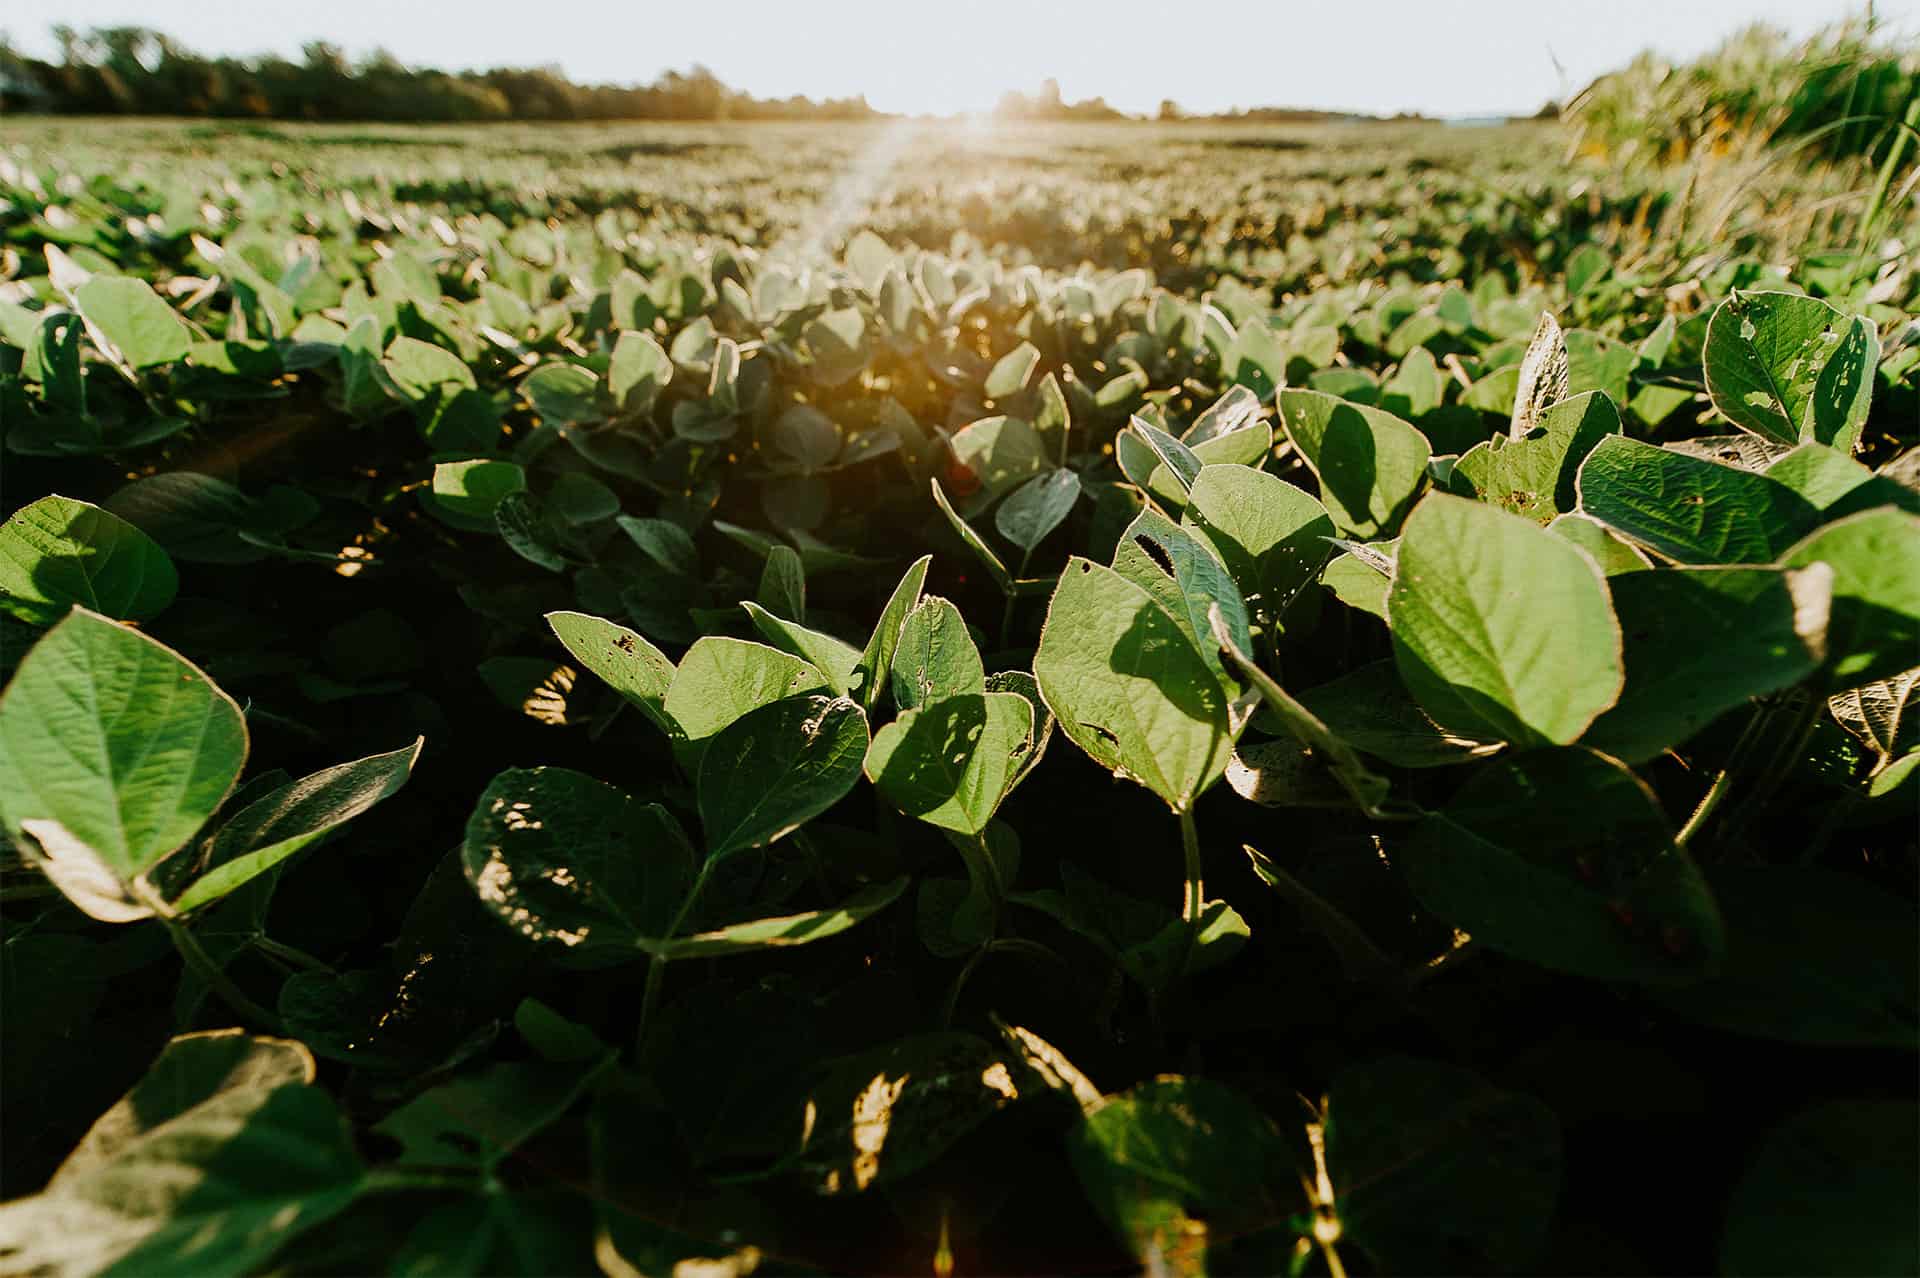 soybean field